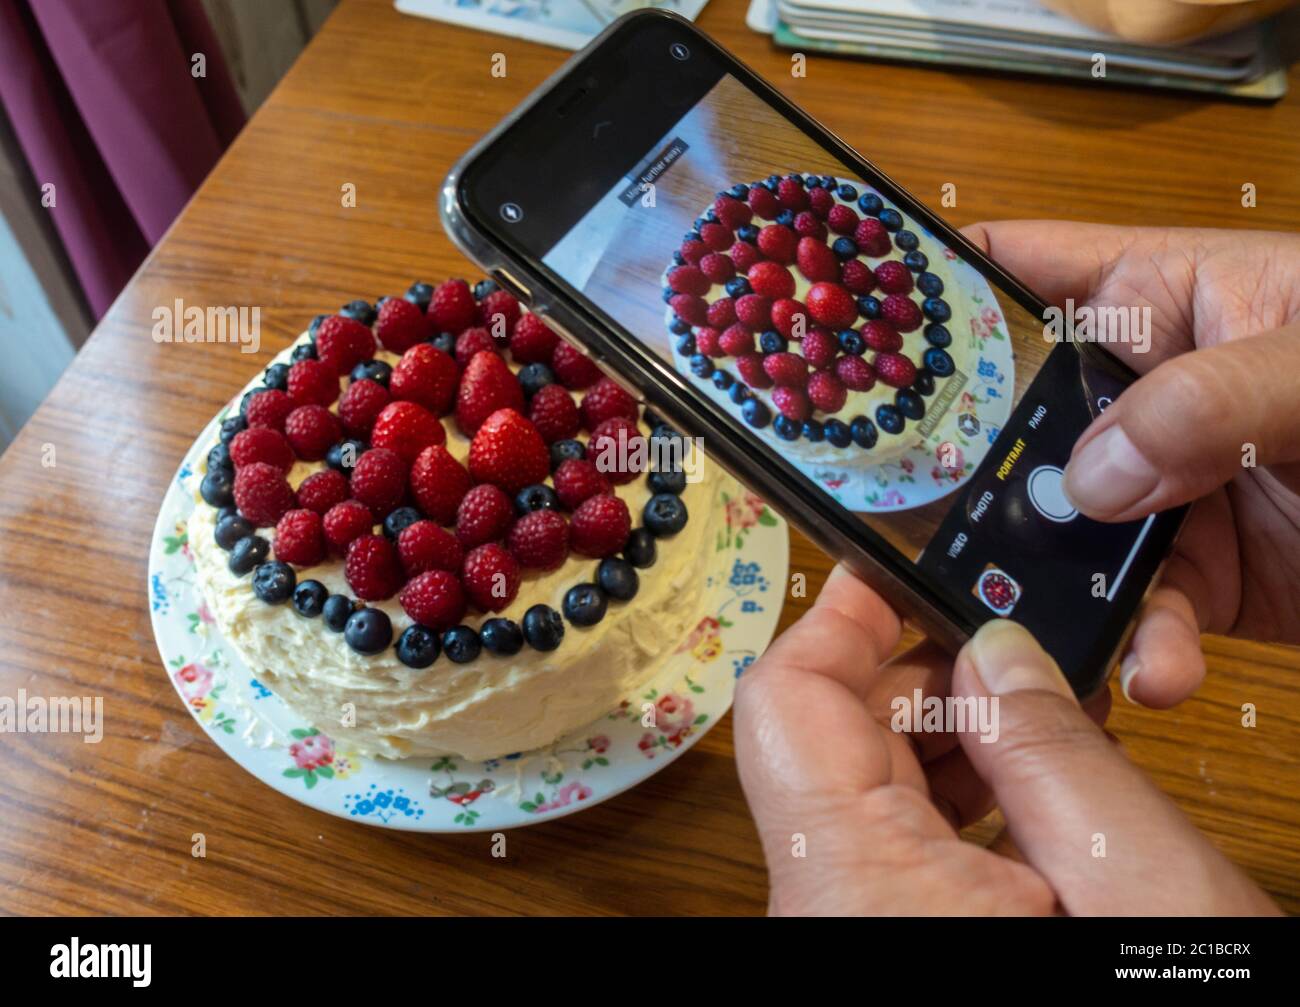 Eine Dame fotografiert mit einem Smartphone einen frisch gebackenen Kuchen, der mit Buttereier und weichen roten und violetten Sommerfrüchten verziert ist Stockfoto